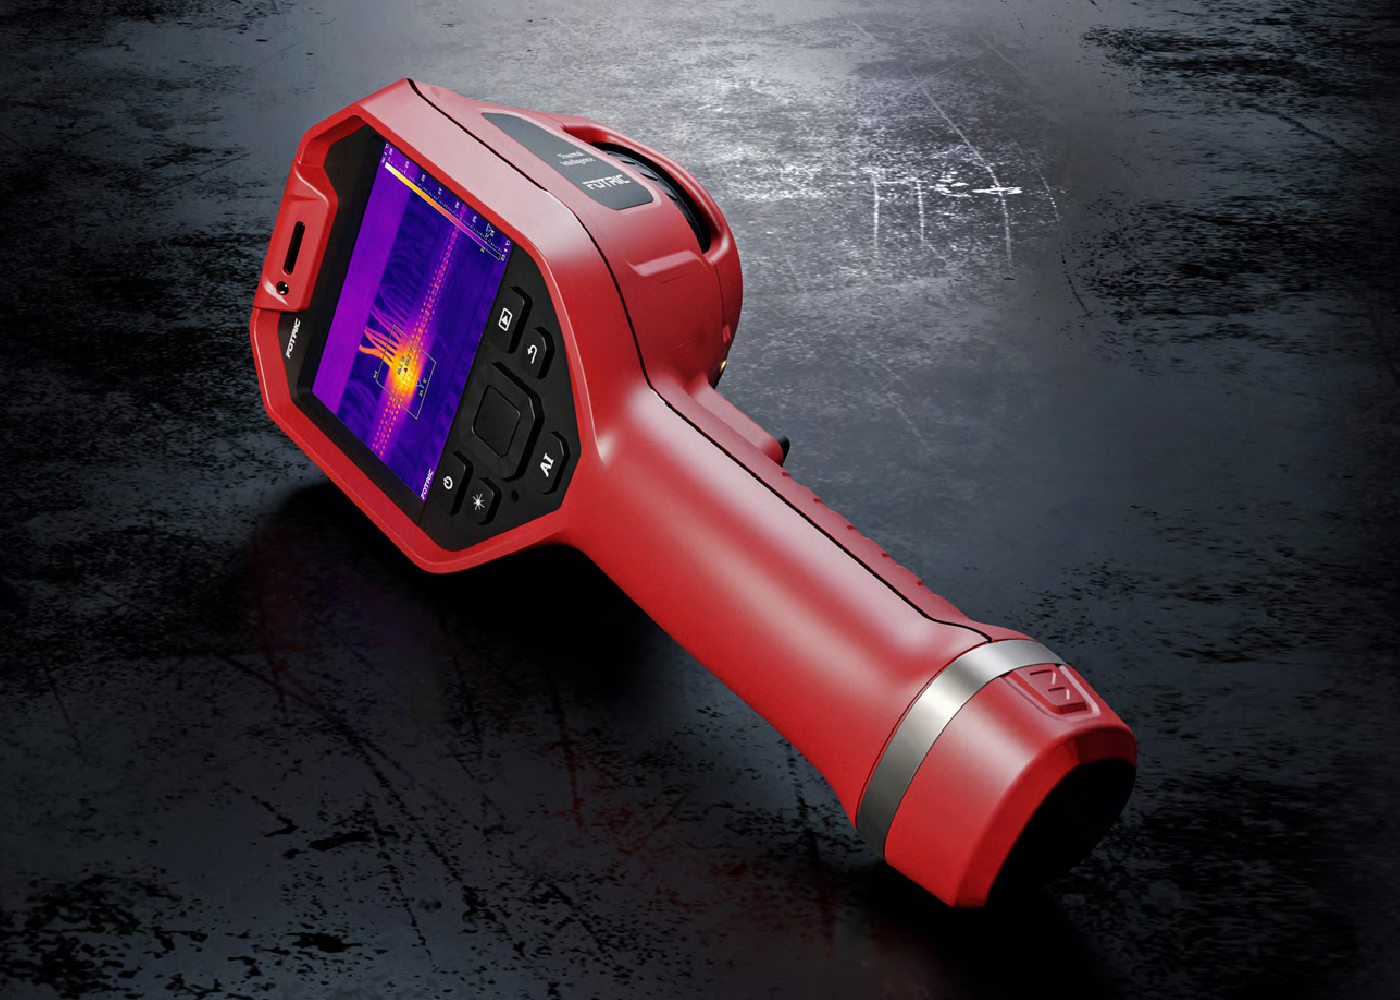 Fotric Portable thermal imaging cameras